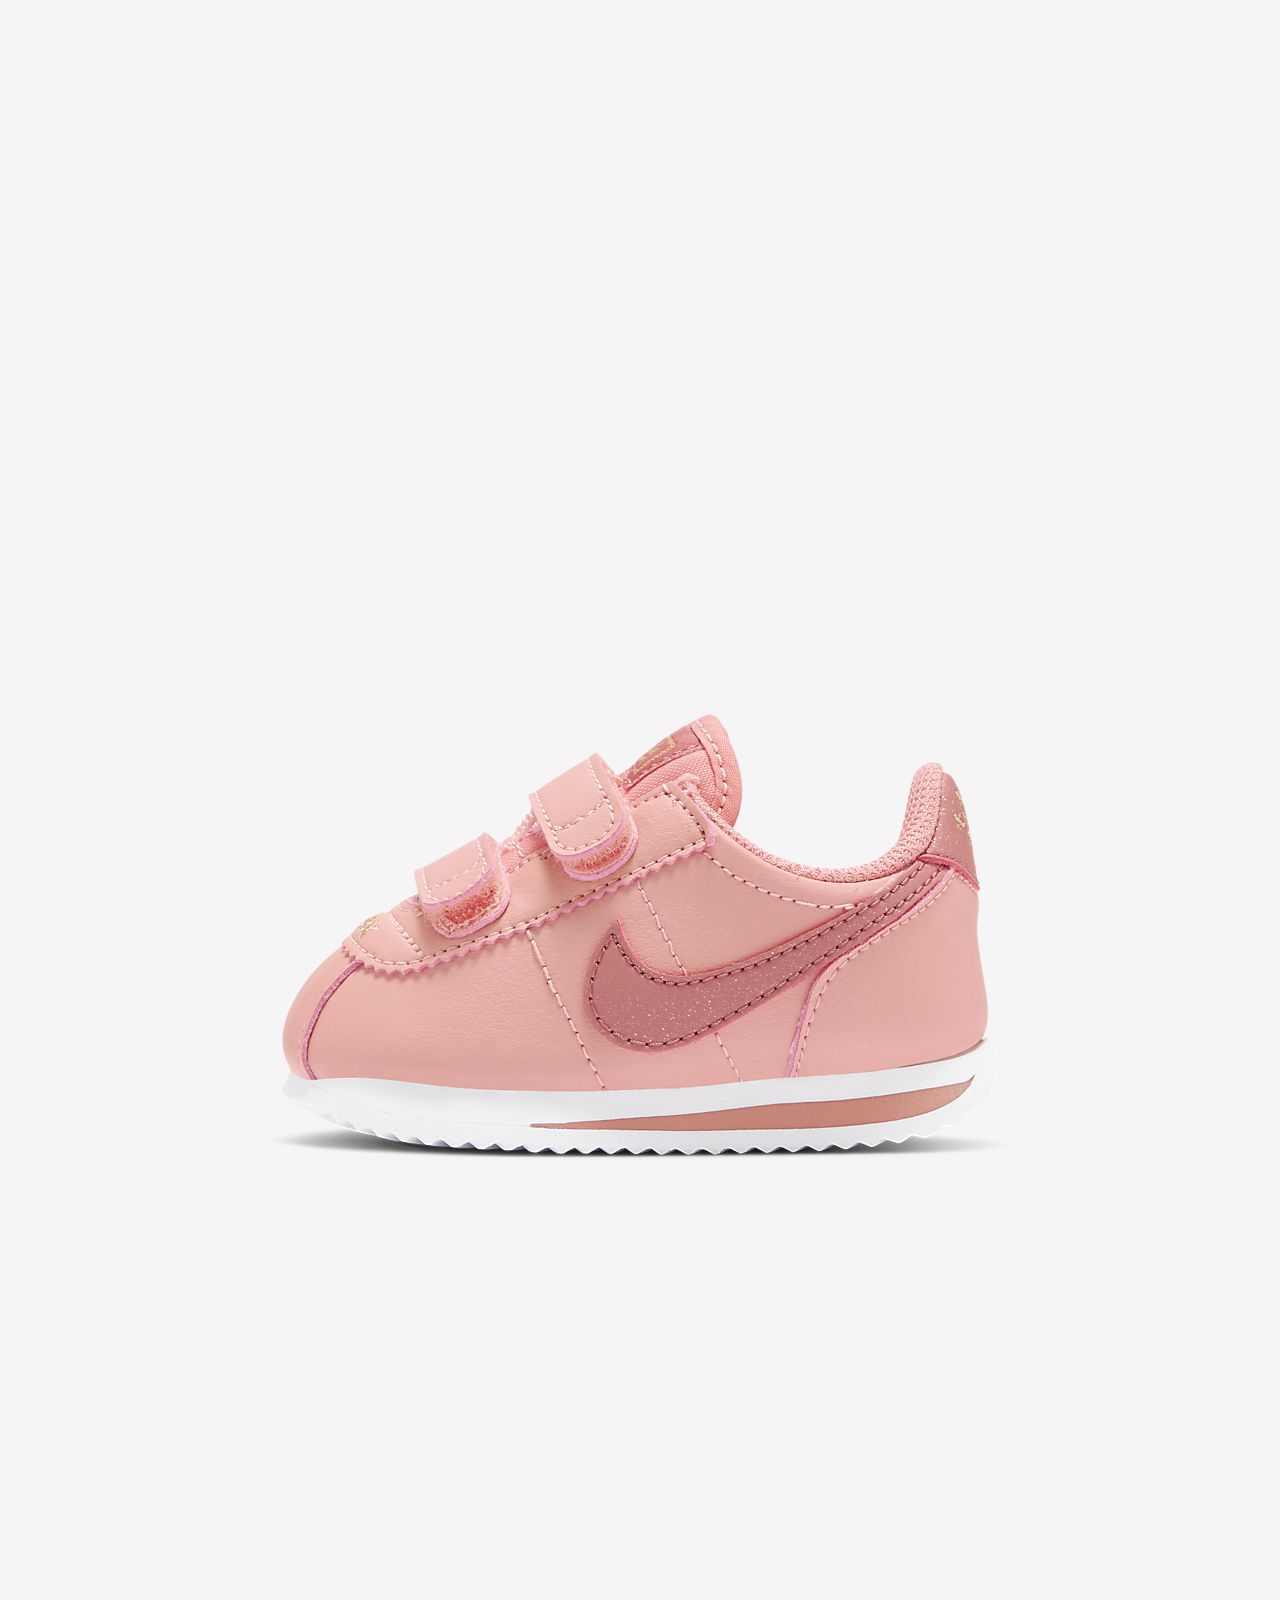 pink cortez shoes